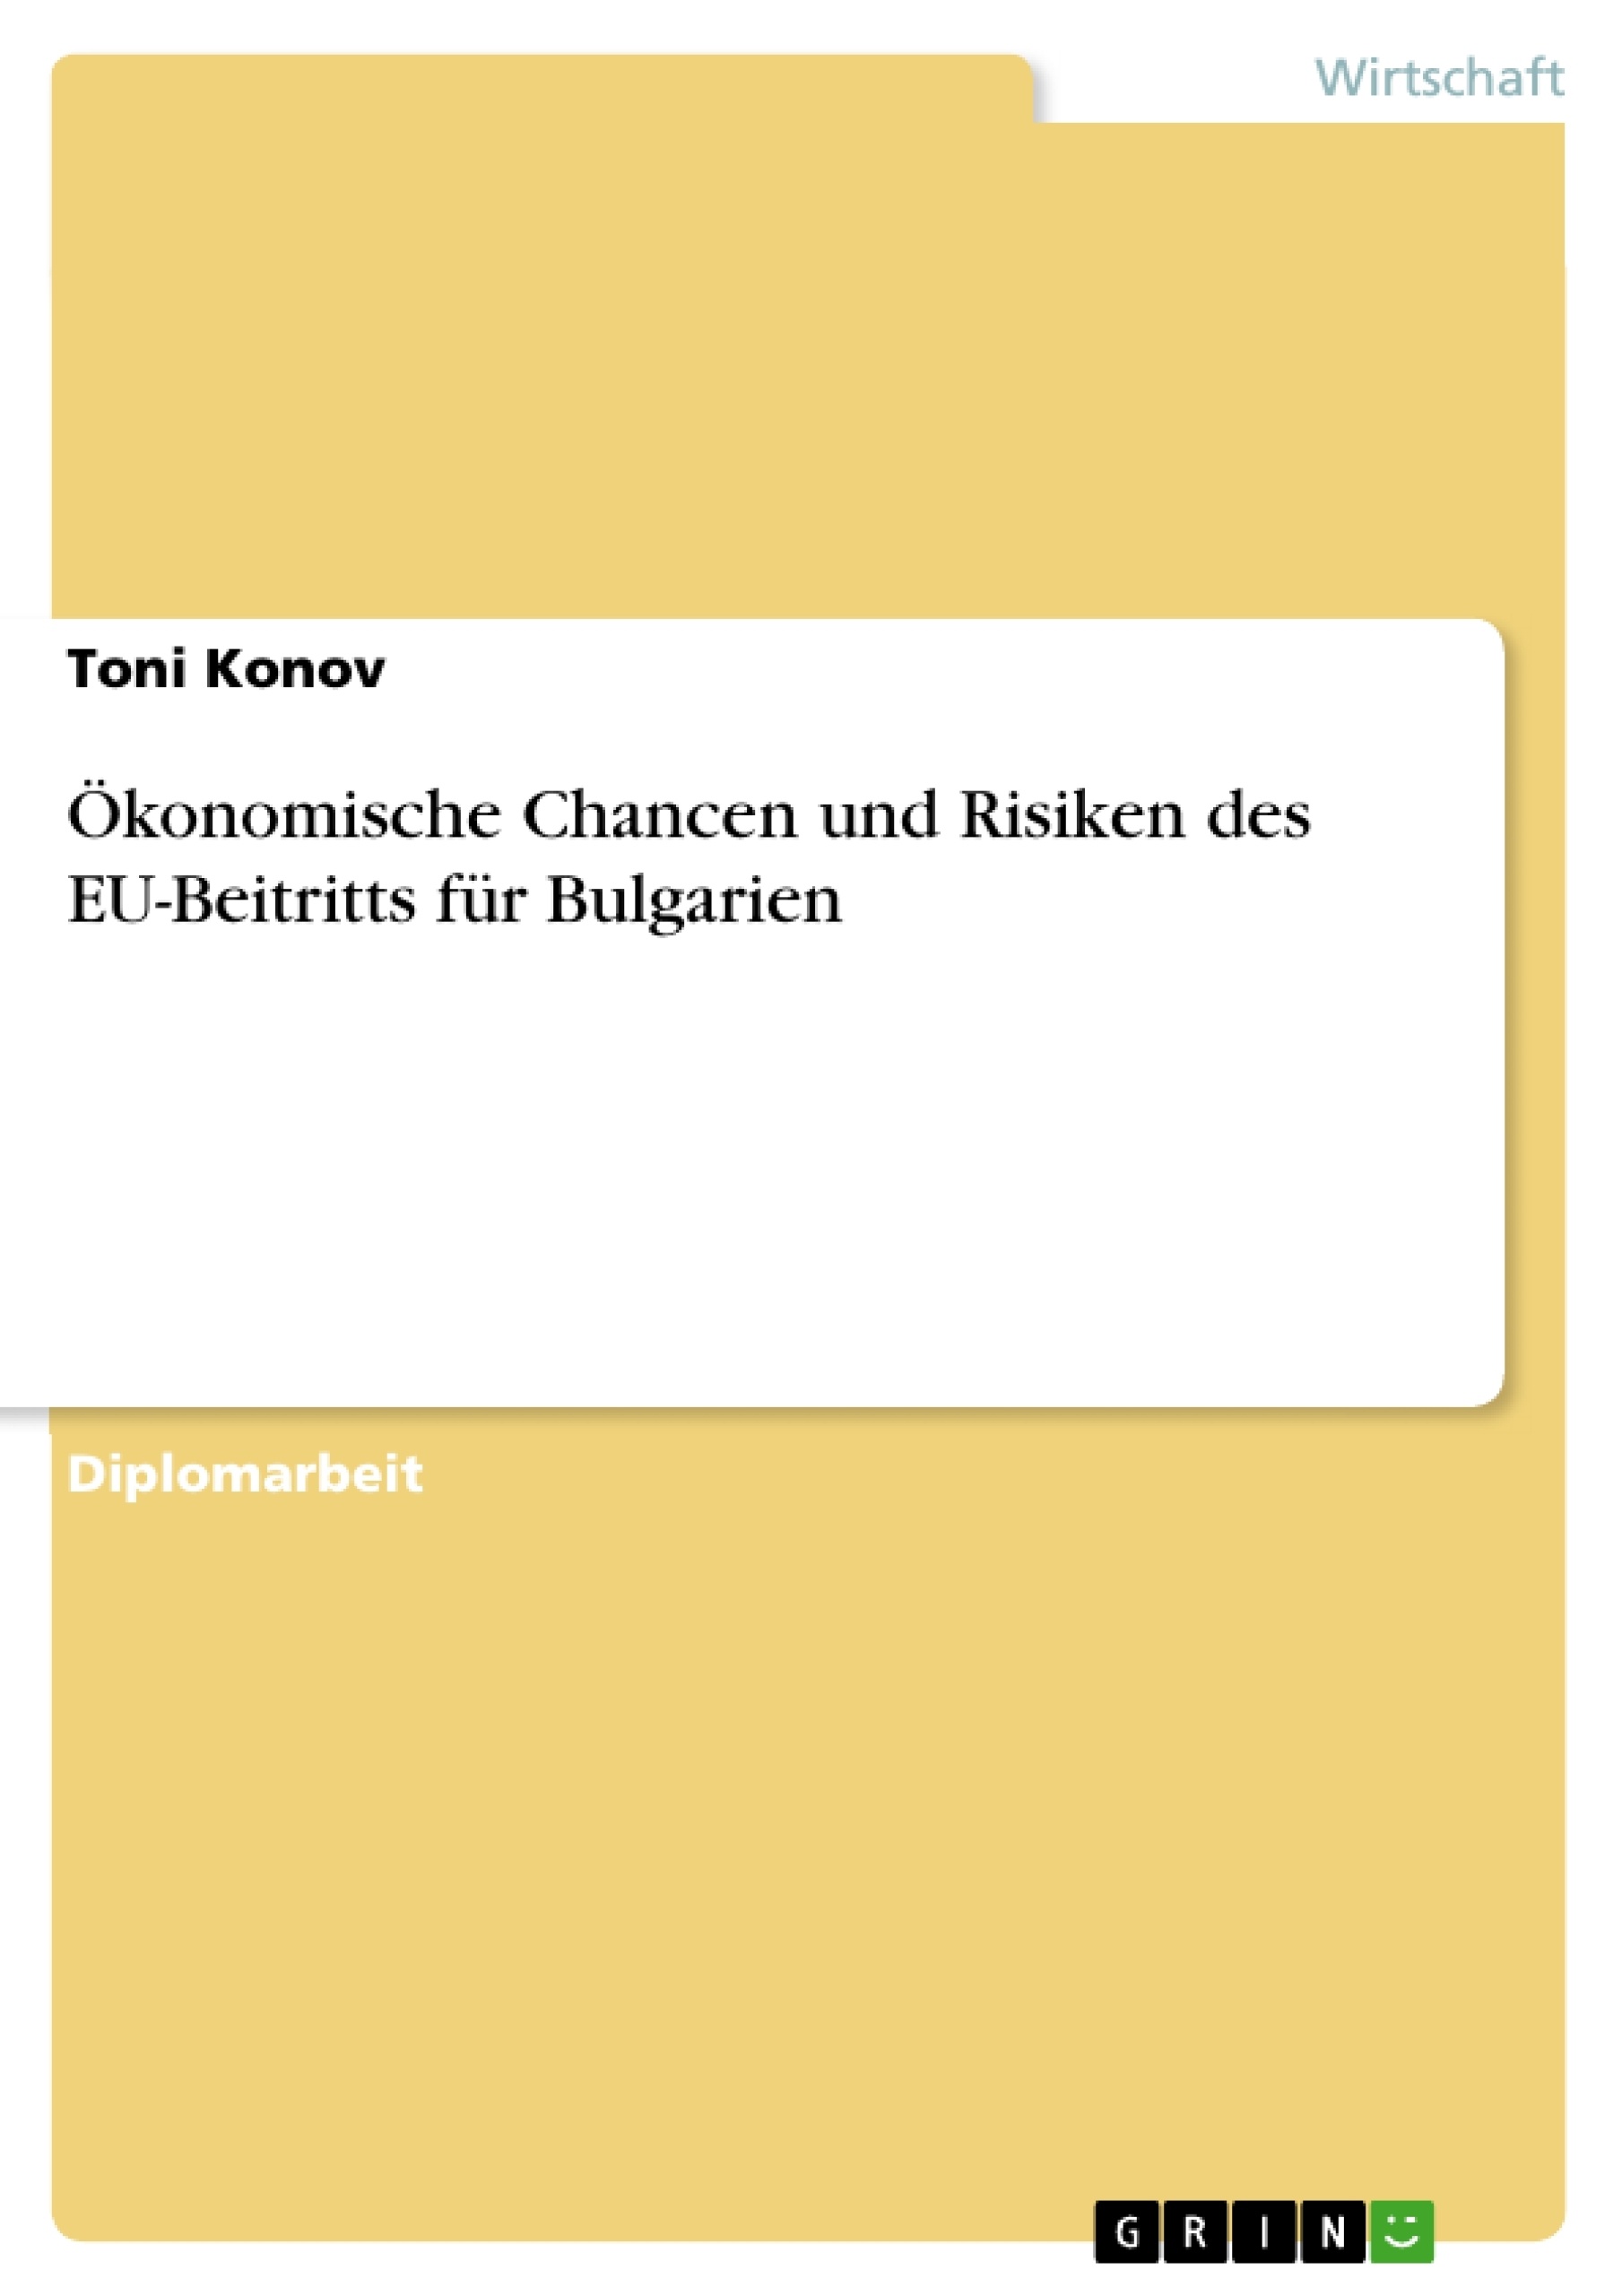 Title: Ökonomische Chancen und Risiken des EU-Beitritts für Bulgarien